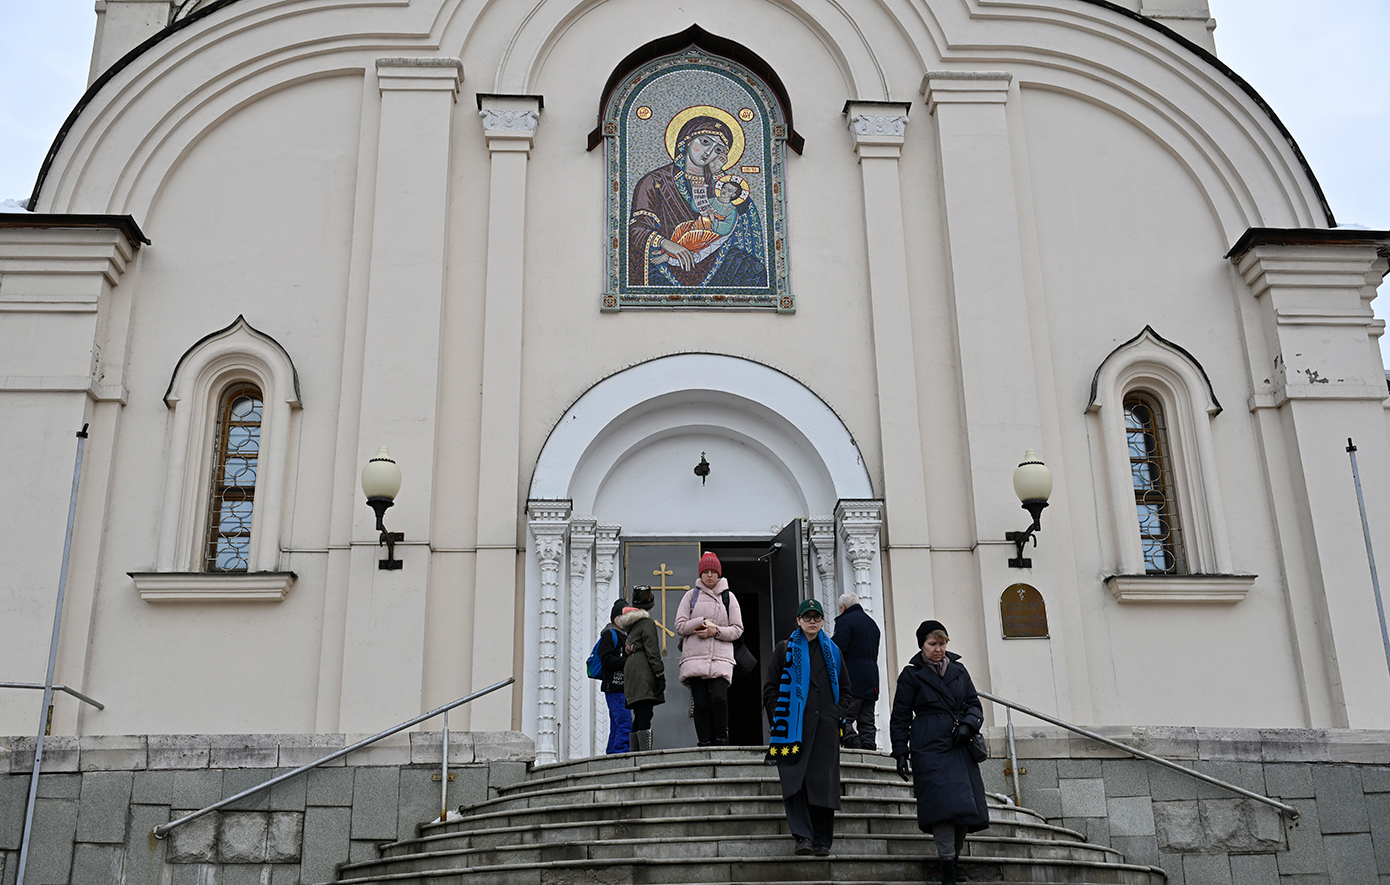 Χορηγίες στον ρωσικό στρατό έχει κάνει η εκκλησία που θα γίνει η κηδεία του Ναβάλνι